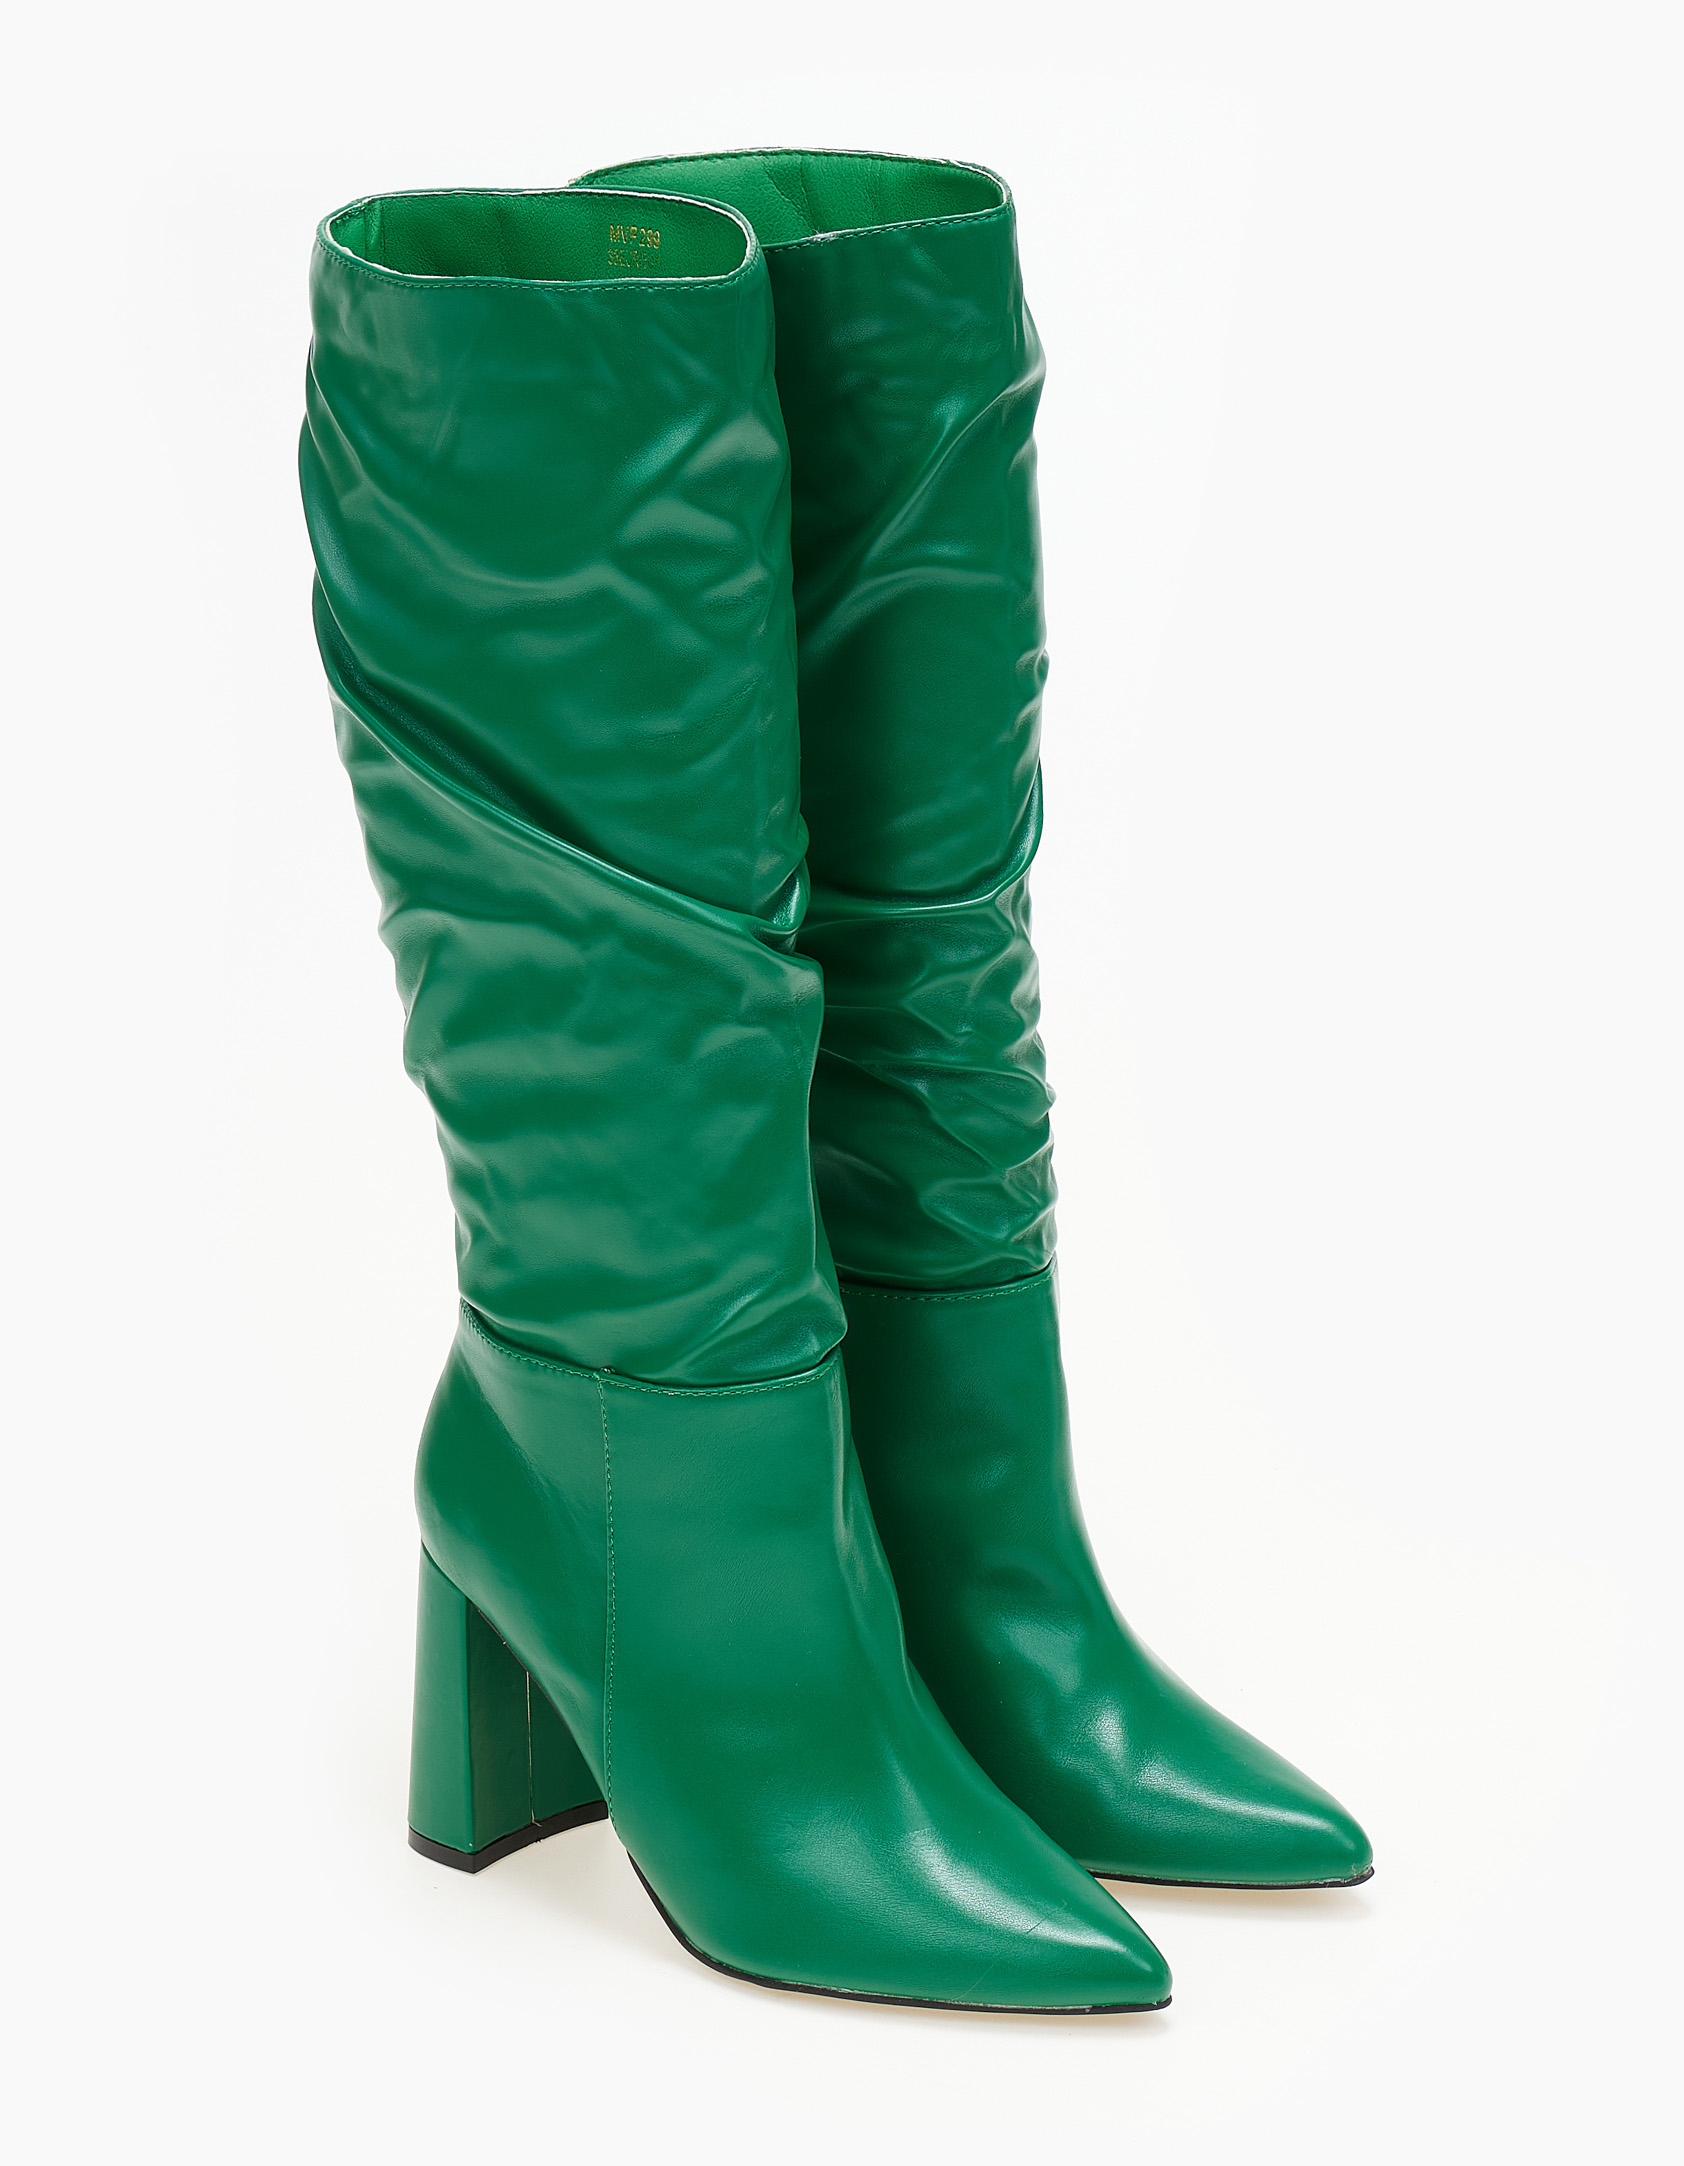 Παπούτσια > Μπότες Μπότες με χοντρό τακούνι - Πράσινο